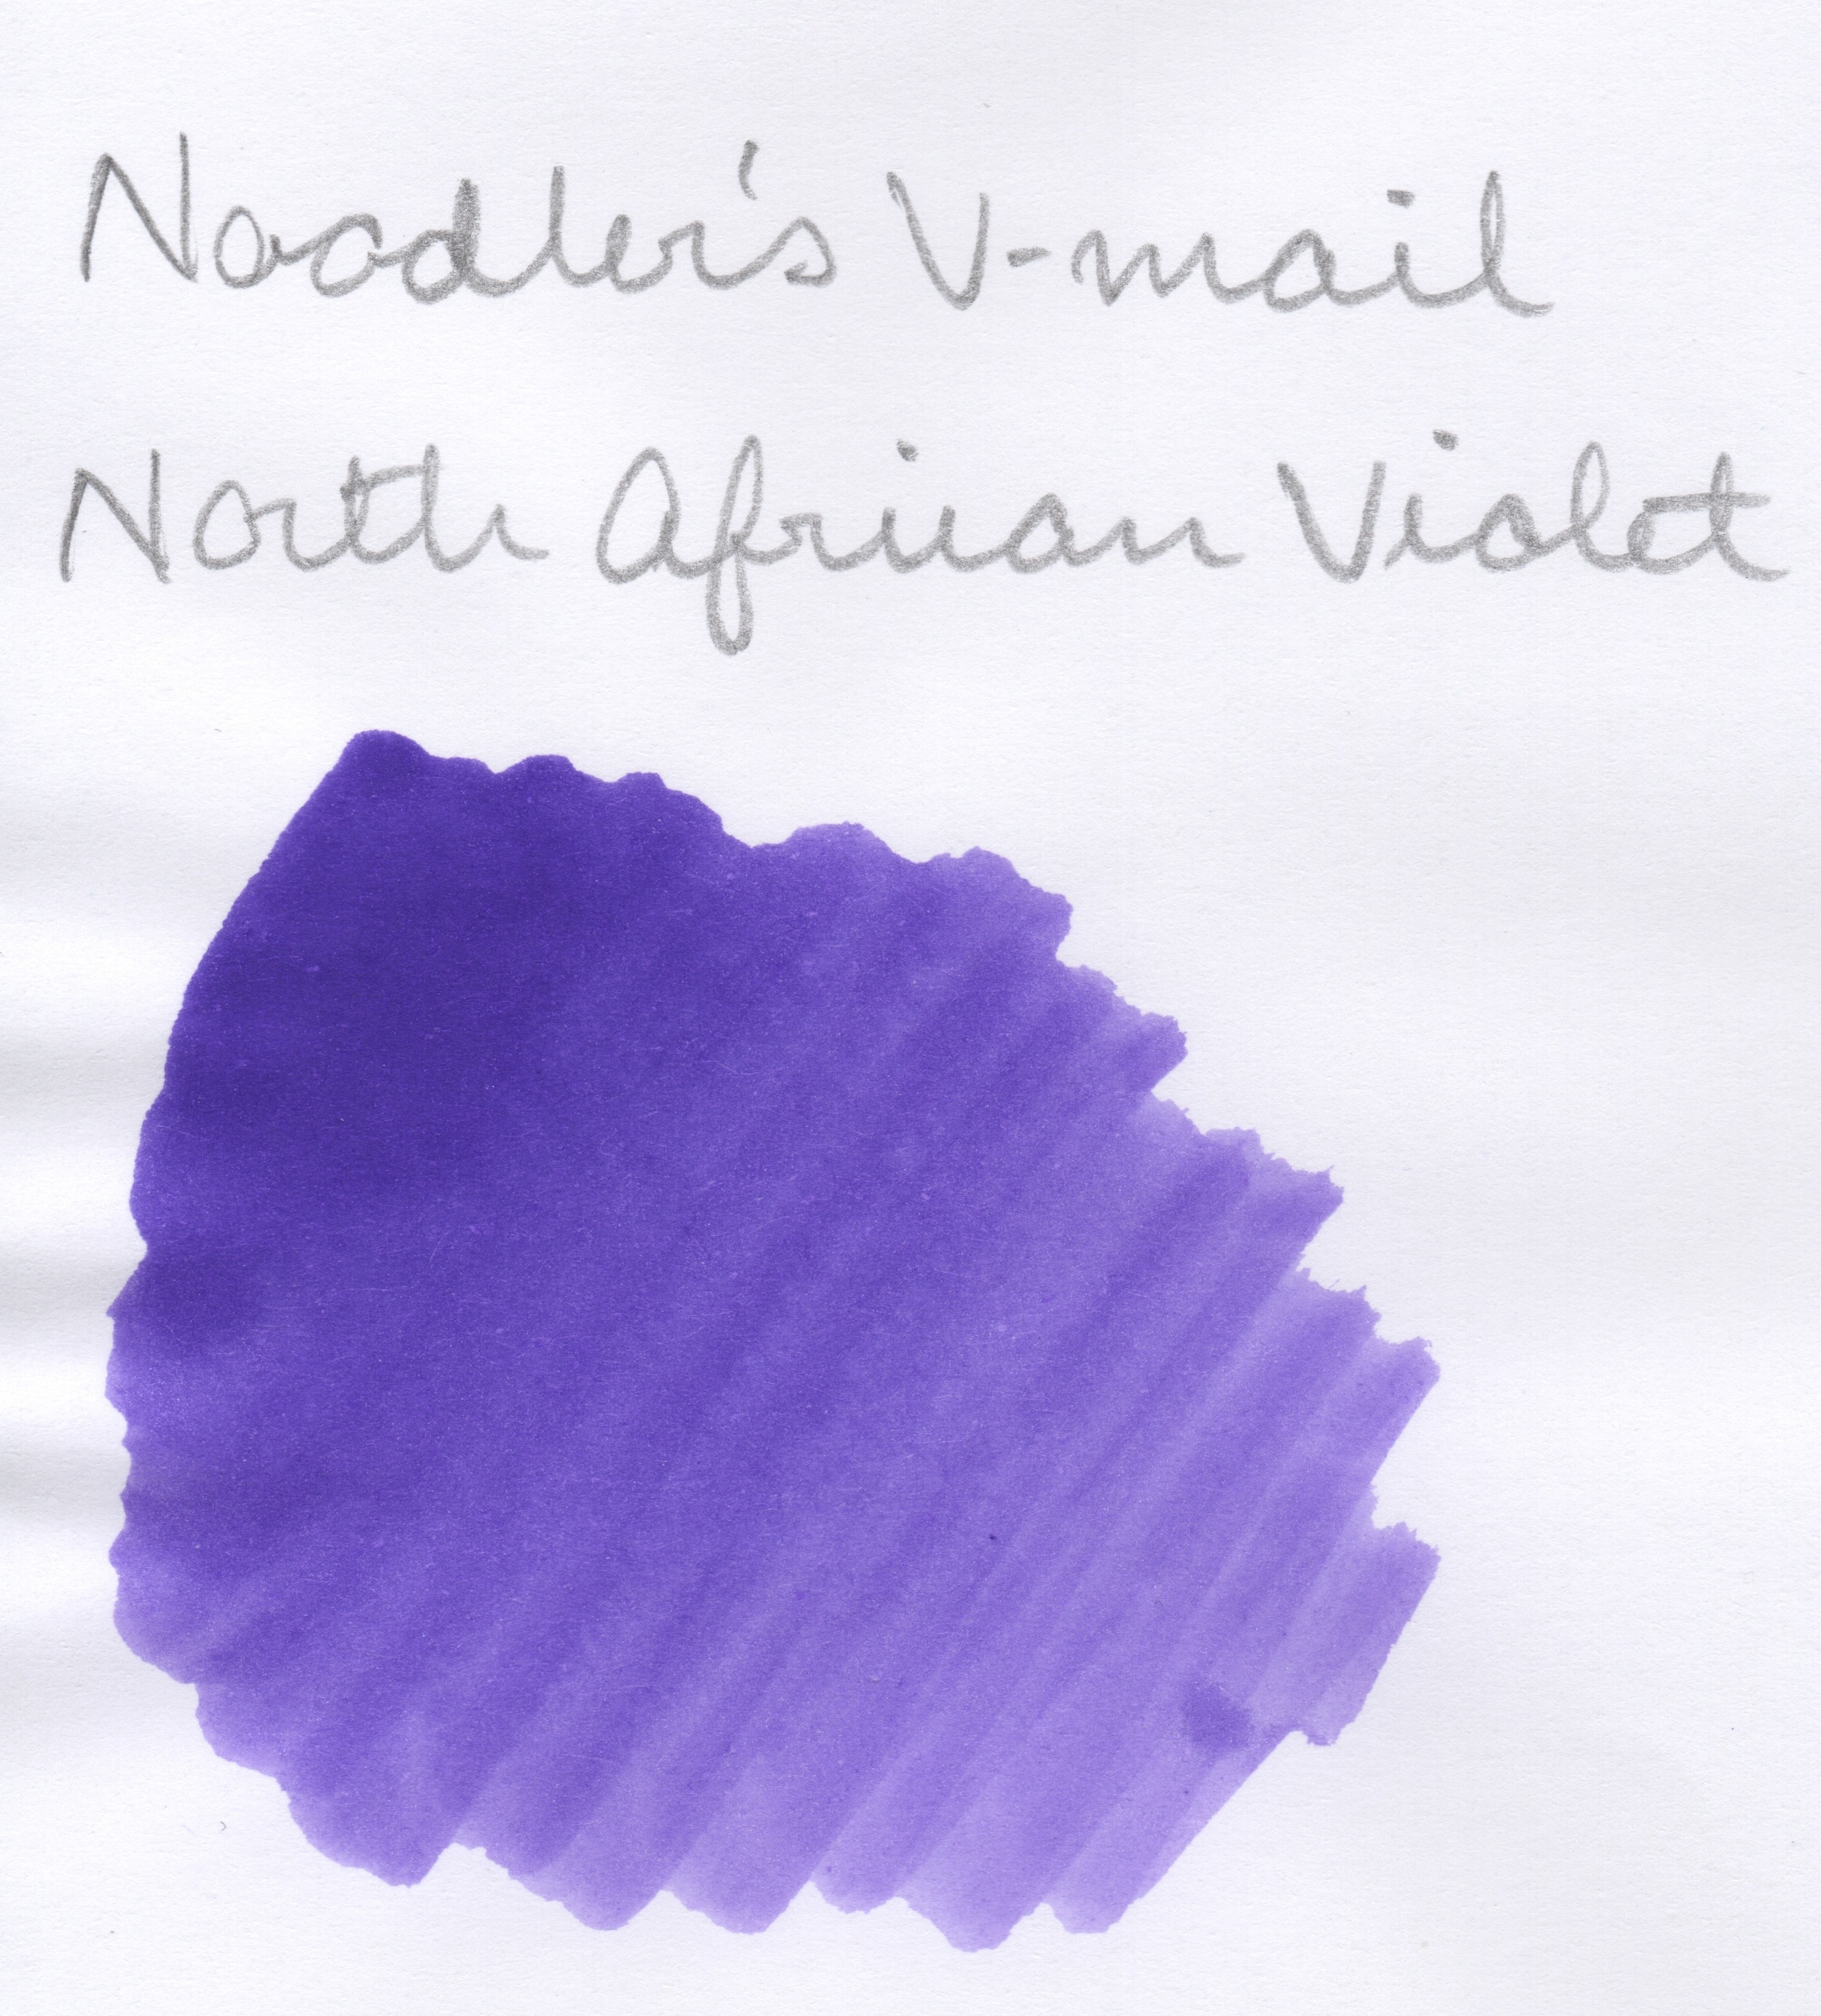 Noodlers N African Violet.jpeg